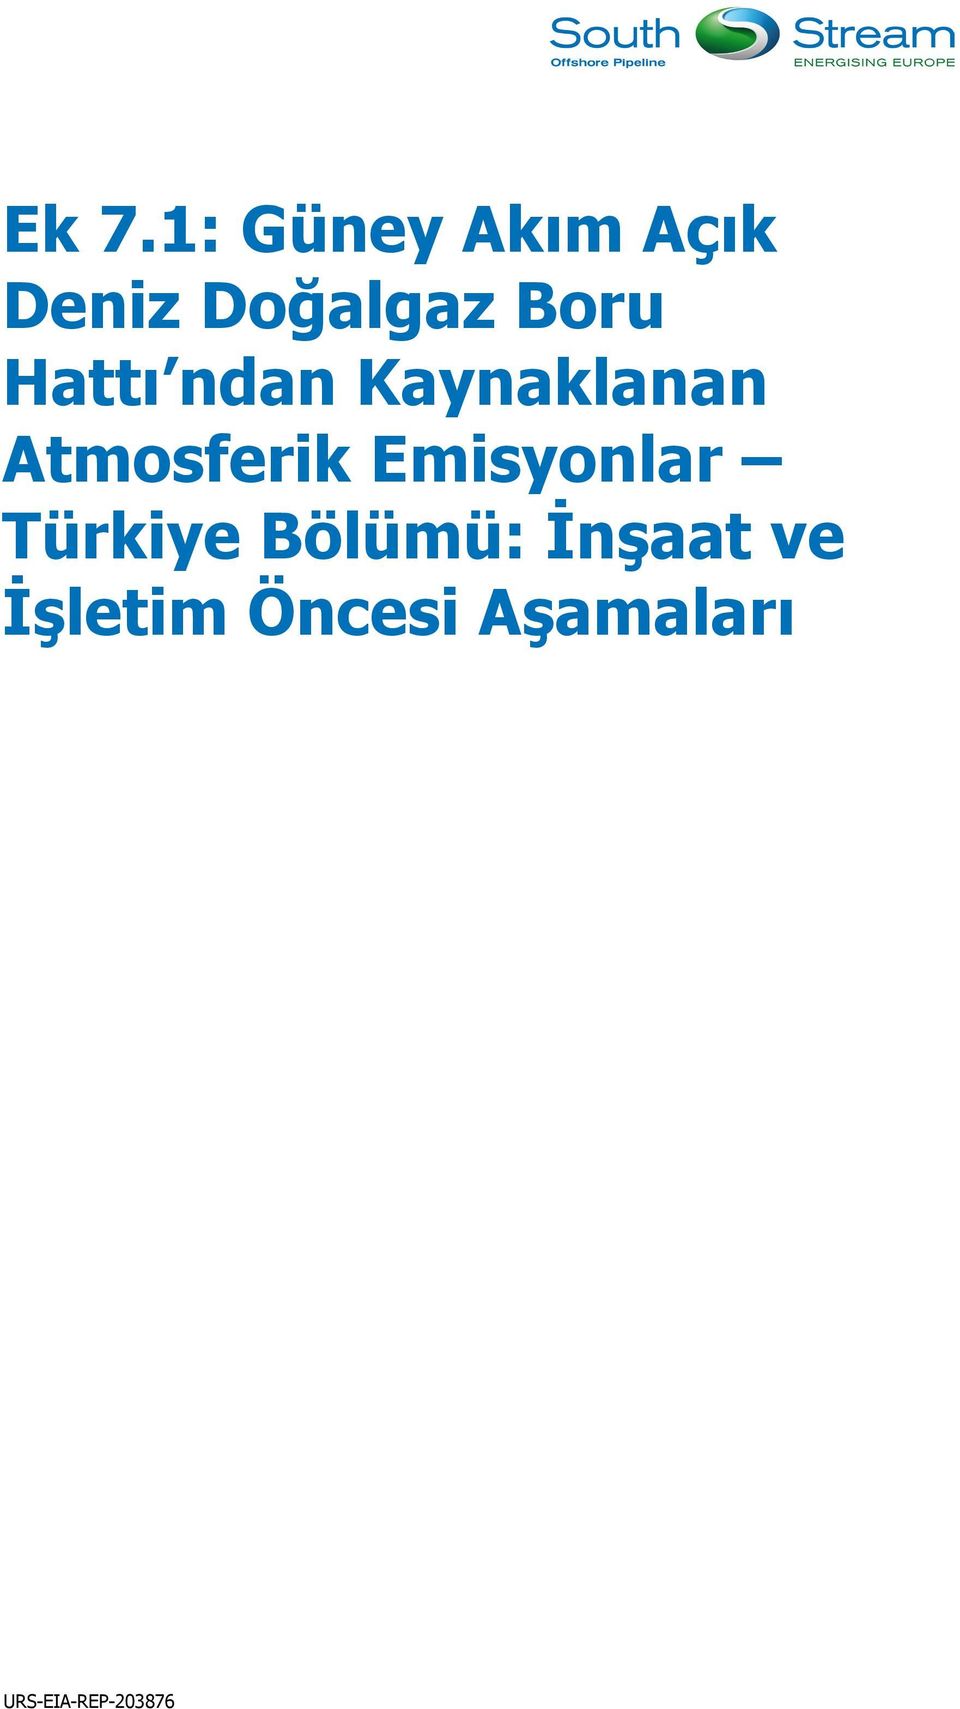 Emisyonlar Türkiye Bölümü: İnşaat ve